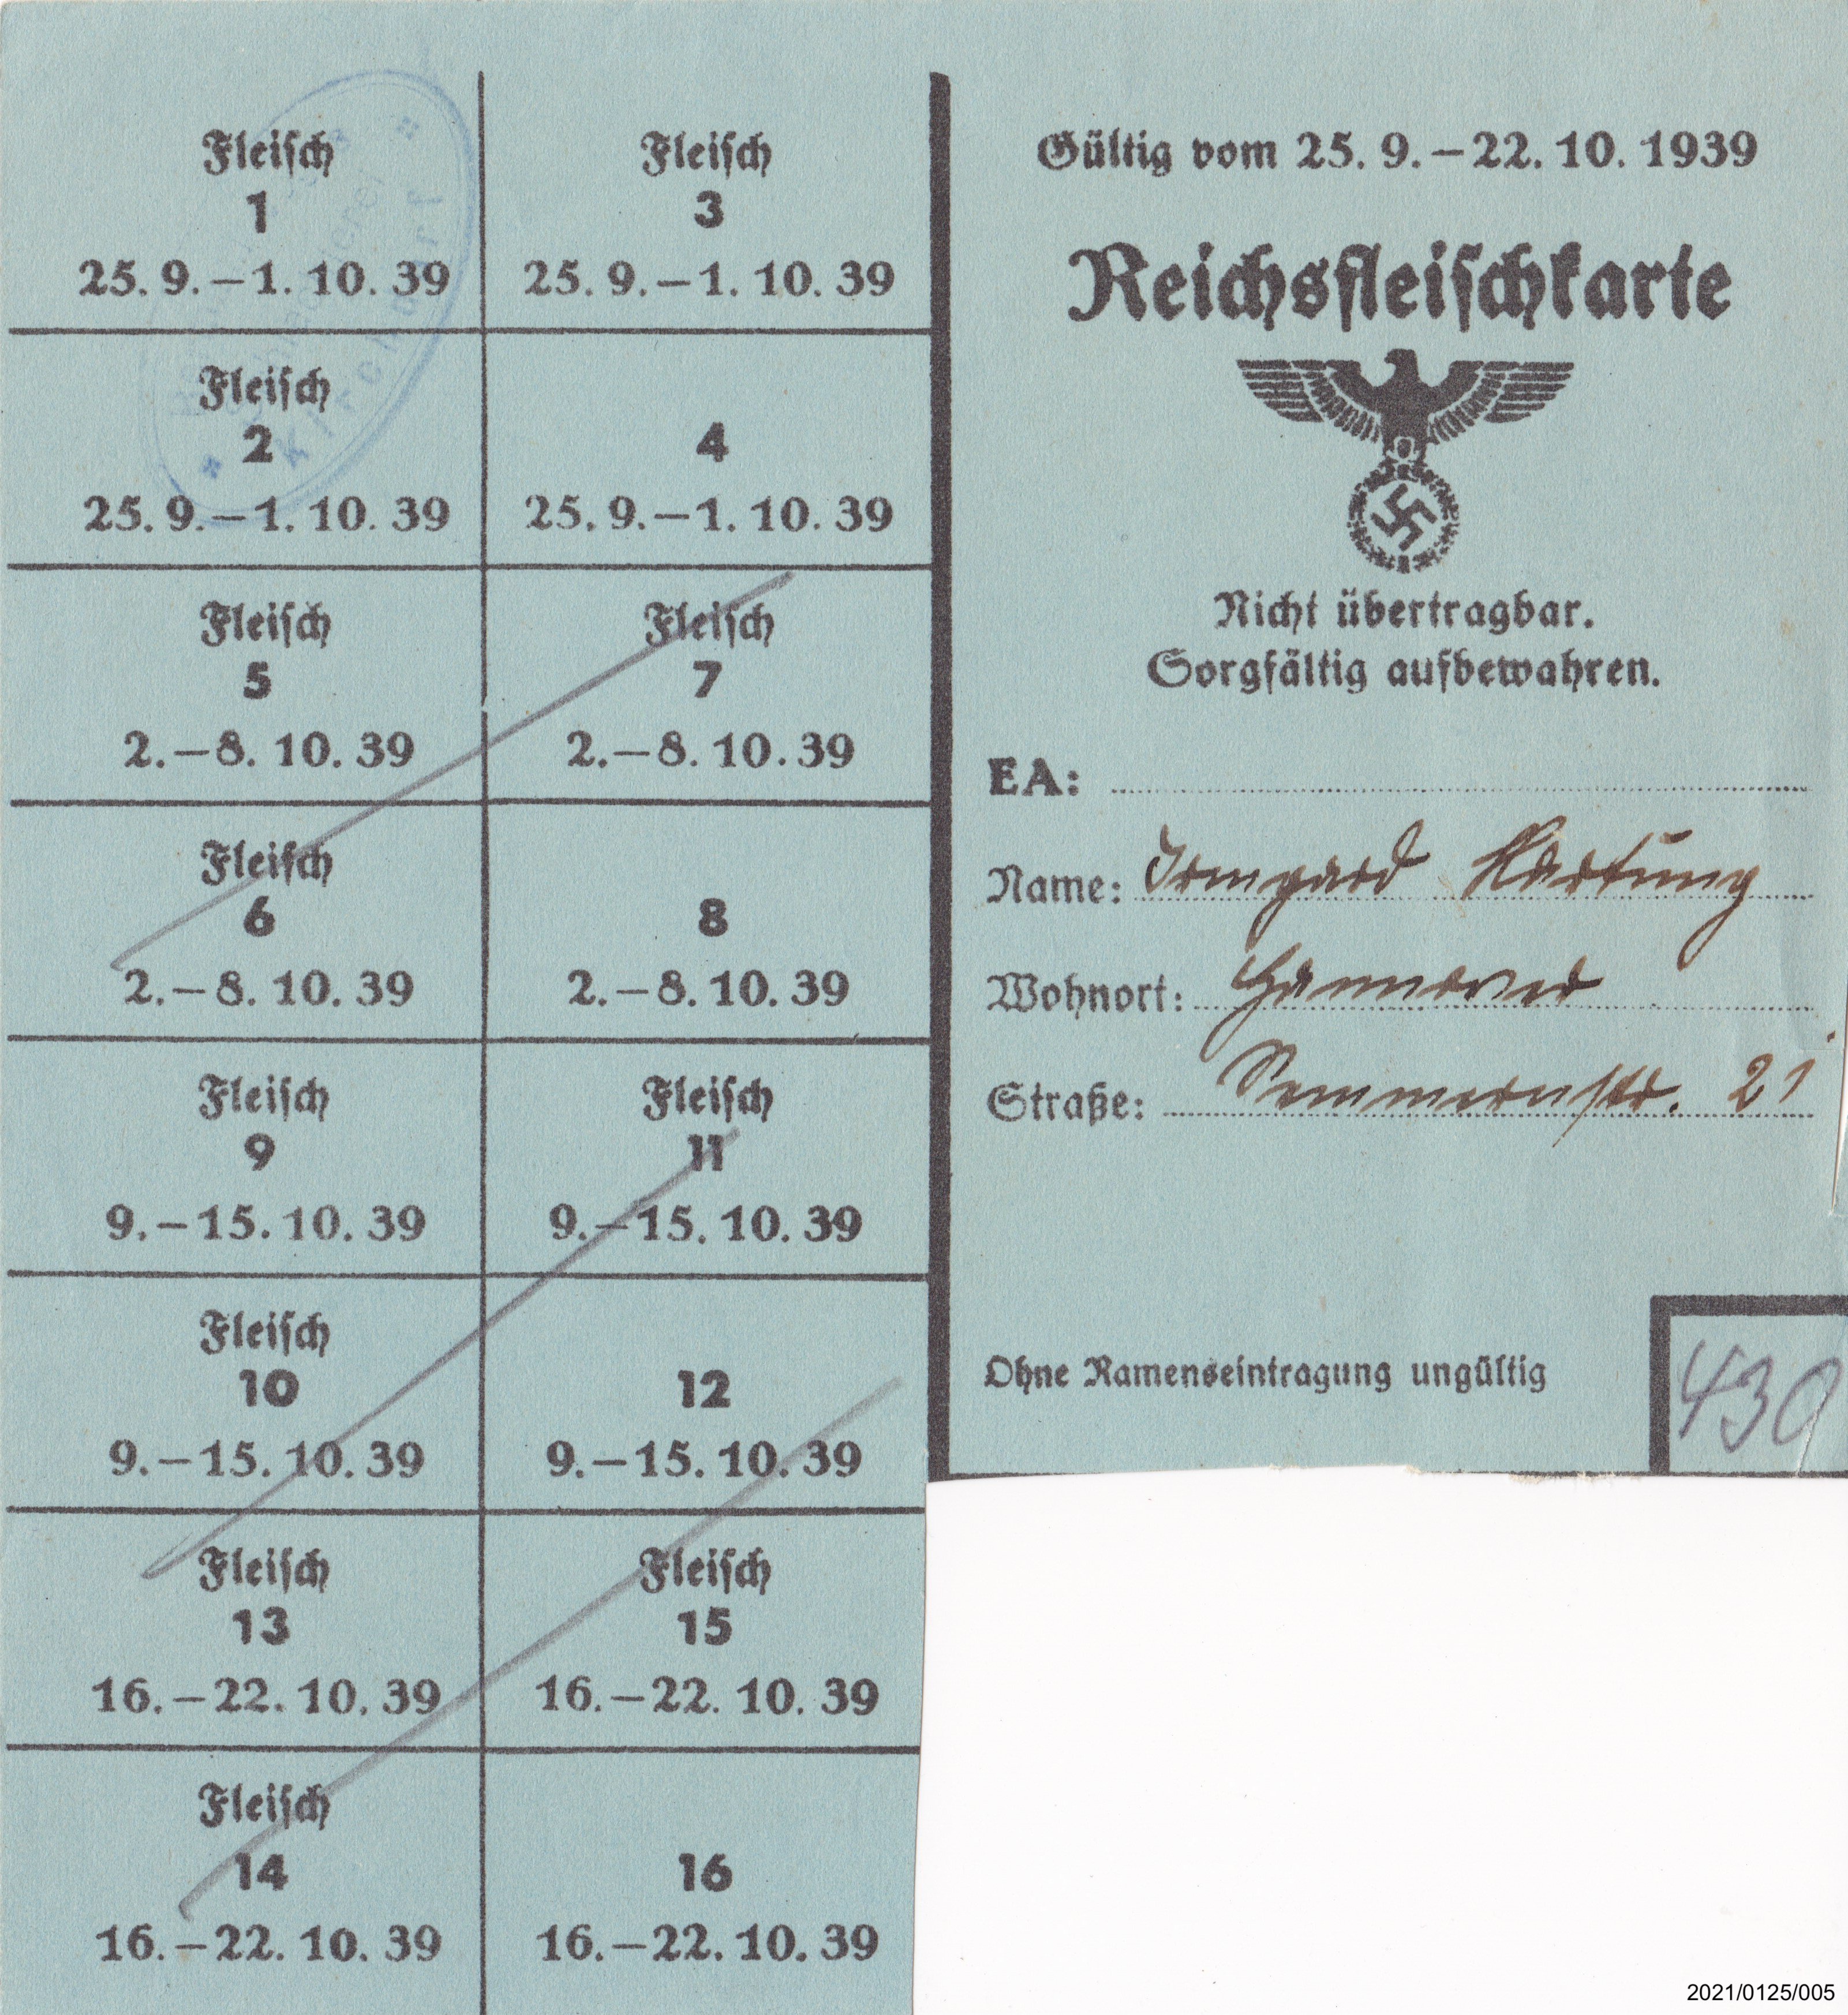 Reichsfleischkarte September 1939 (Museumsgesellschaft Bad Dürkheim e. V. CC BY-NC-SA)